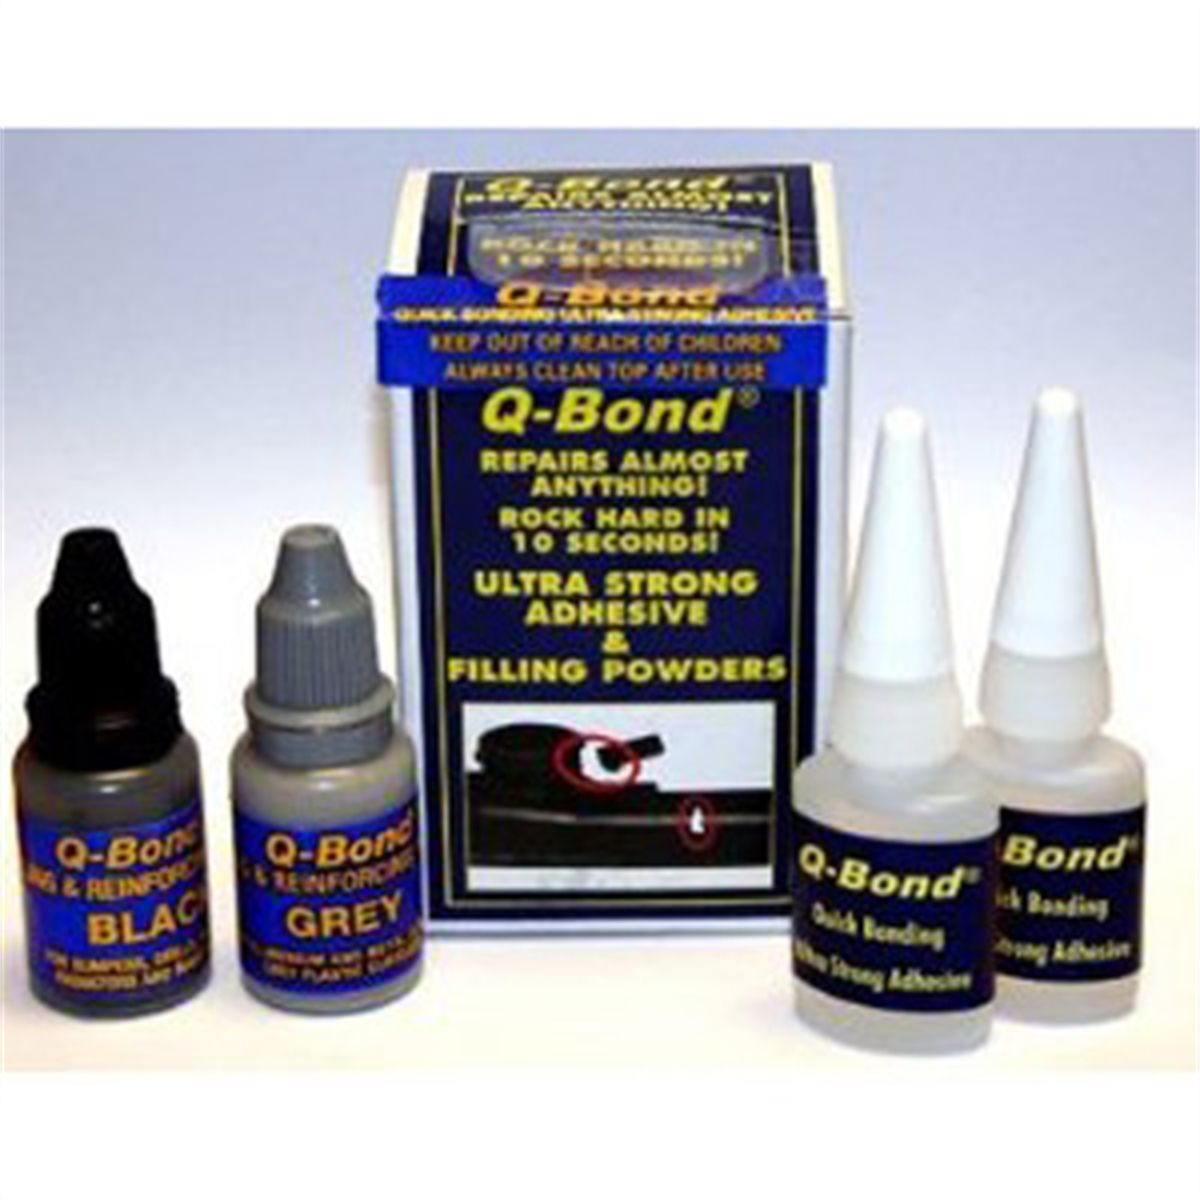 Q BOND Adhesive Kit